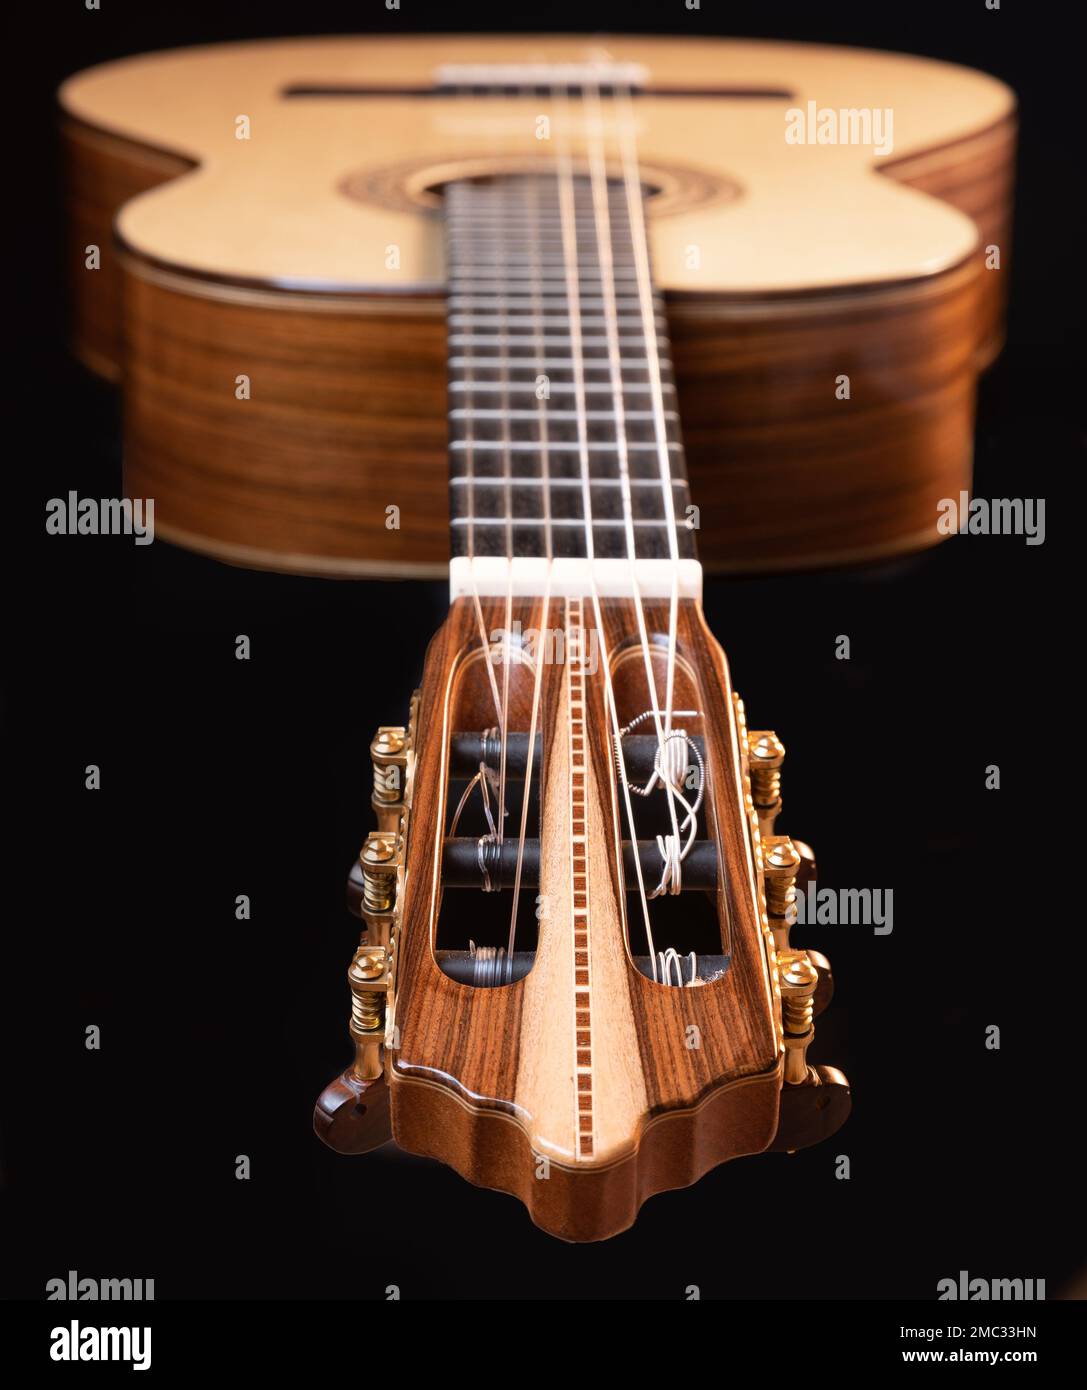 Klassische Gitarrenkopfstock-Details auf schwarzem Hintergrund. Klassisches Akustikgitarrenkonzept. Perfekt für Flyer, Karten, Poster oder Tapeten Stockfoto